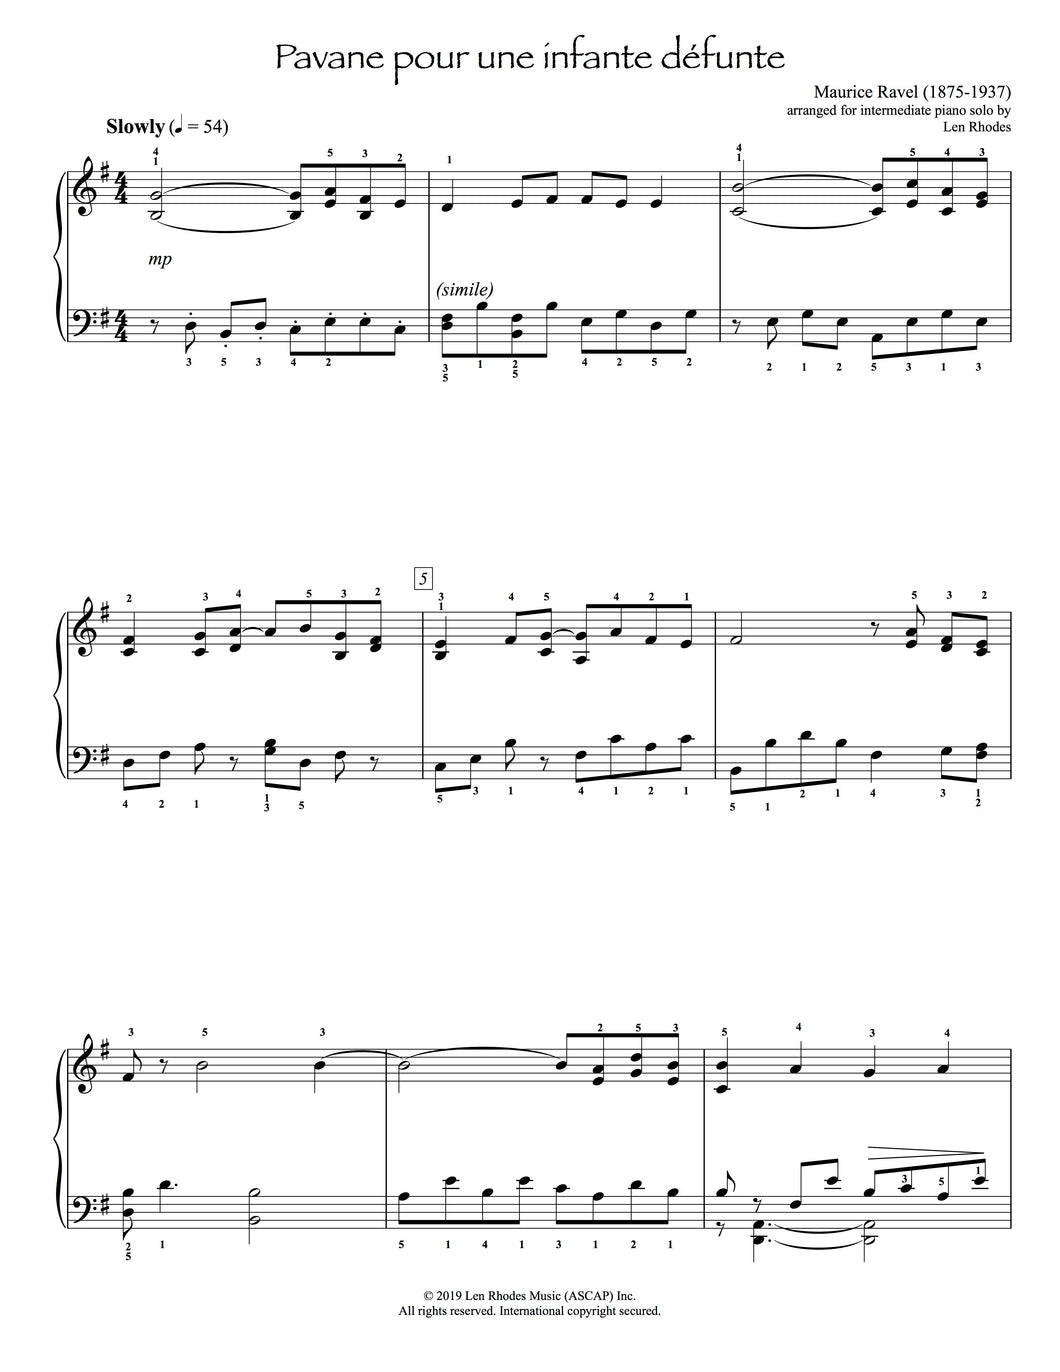 Pavane pour une infante défunte, Ravel - intermediate Piano